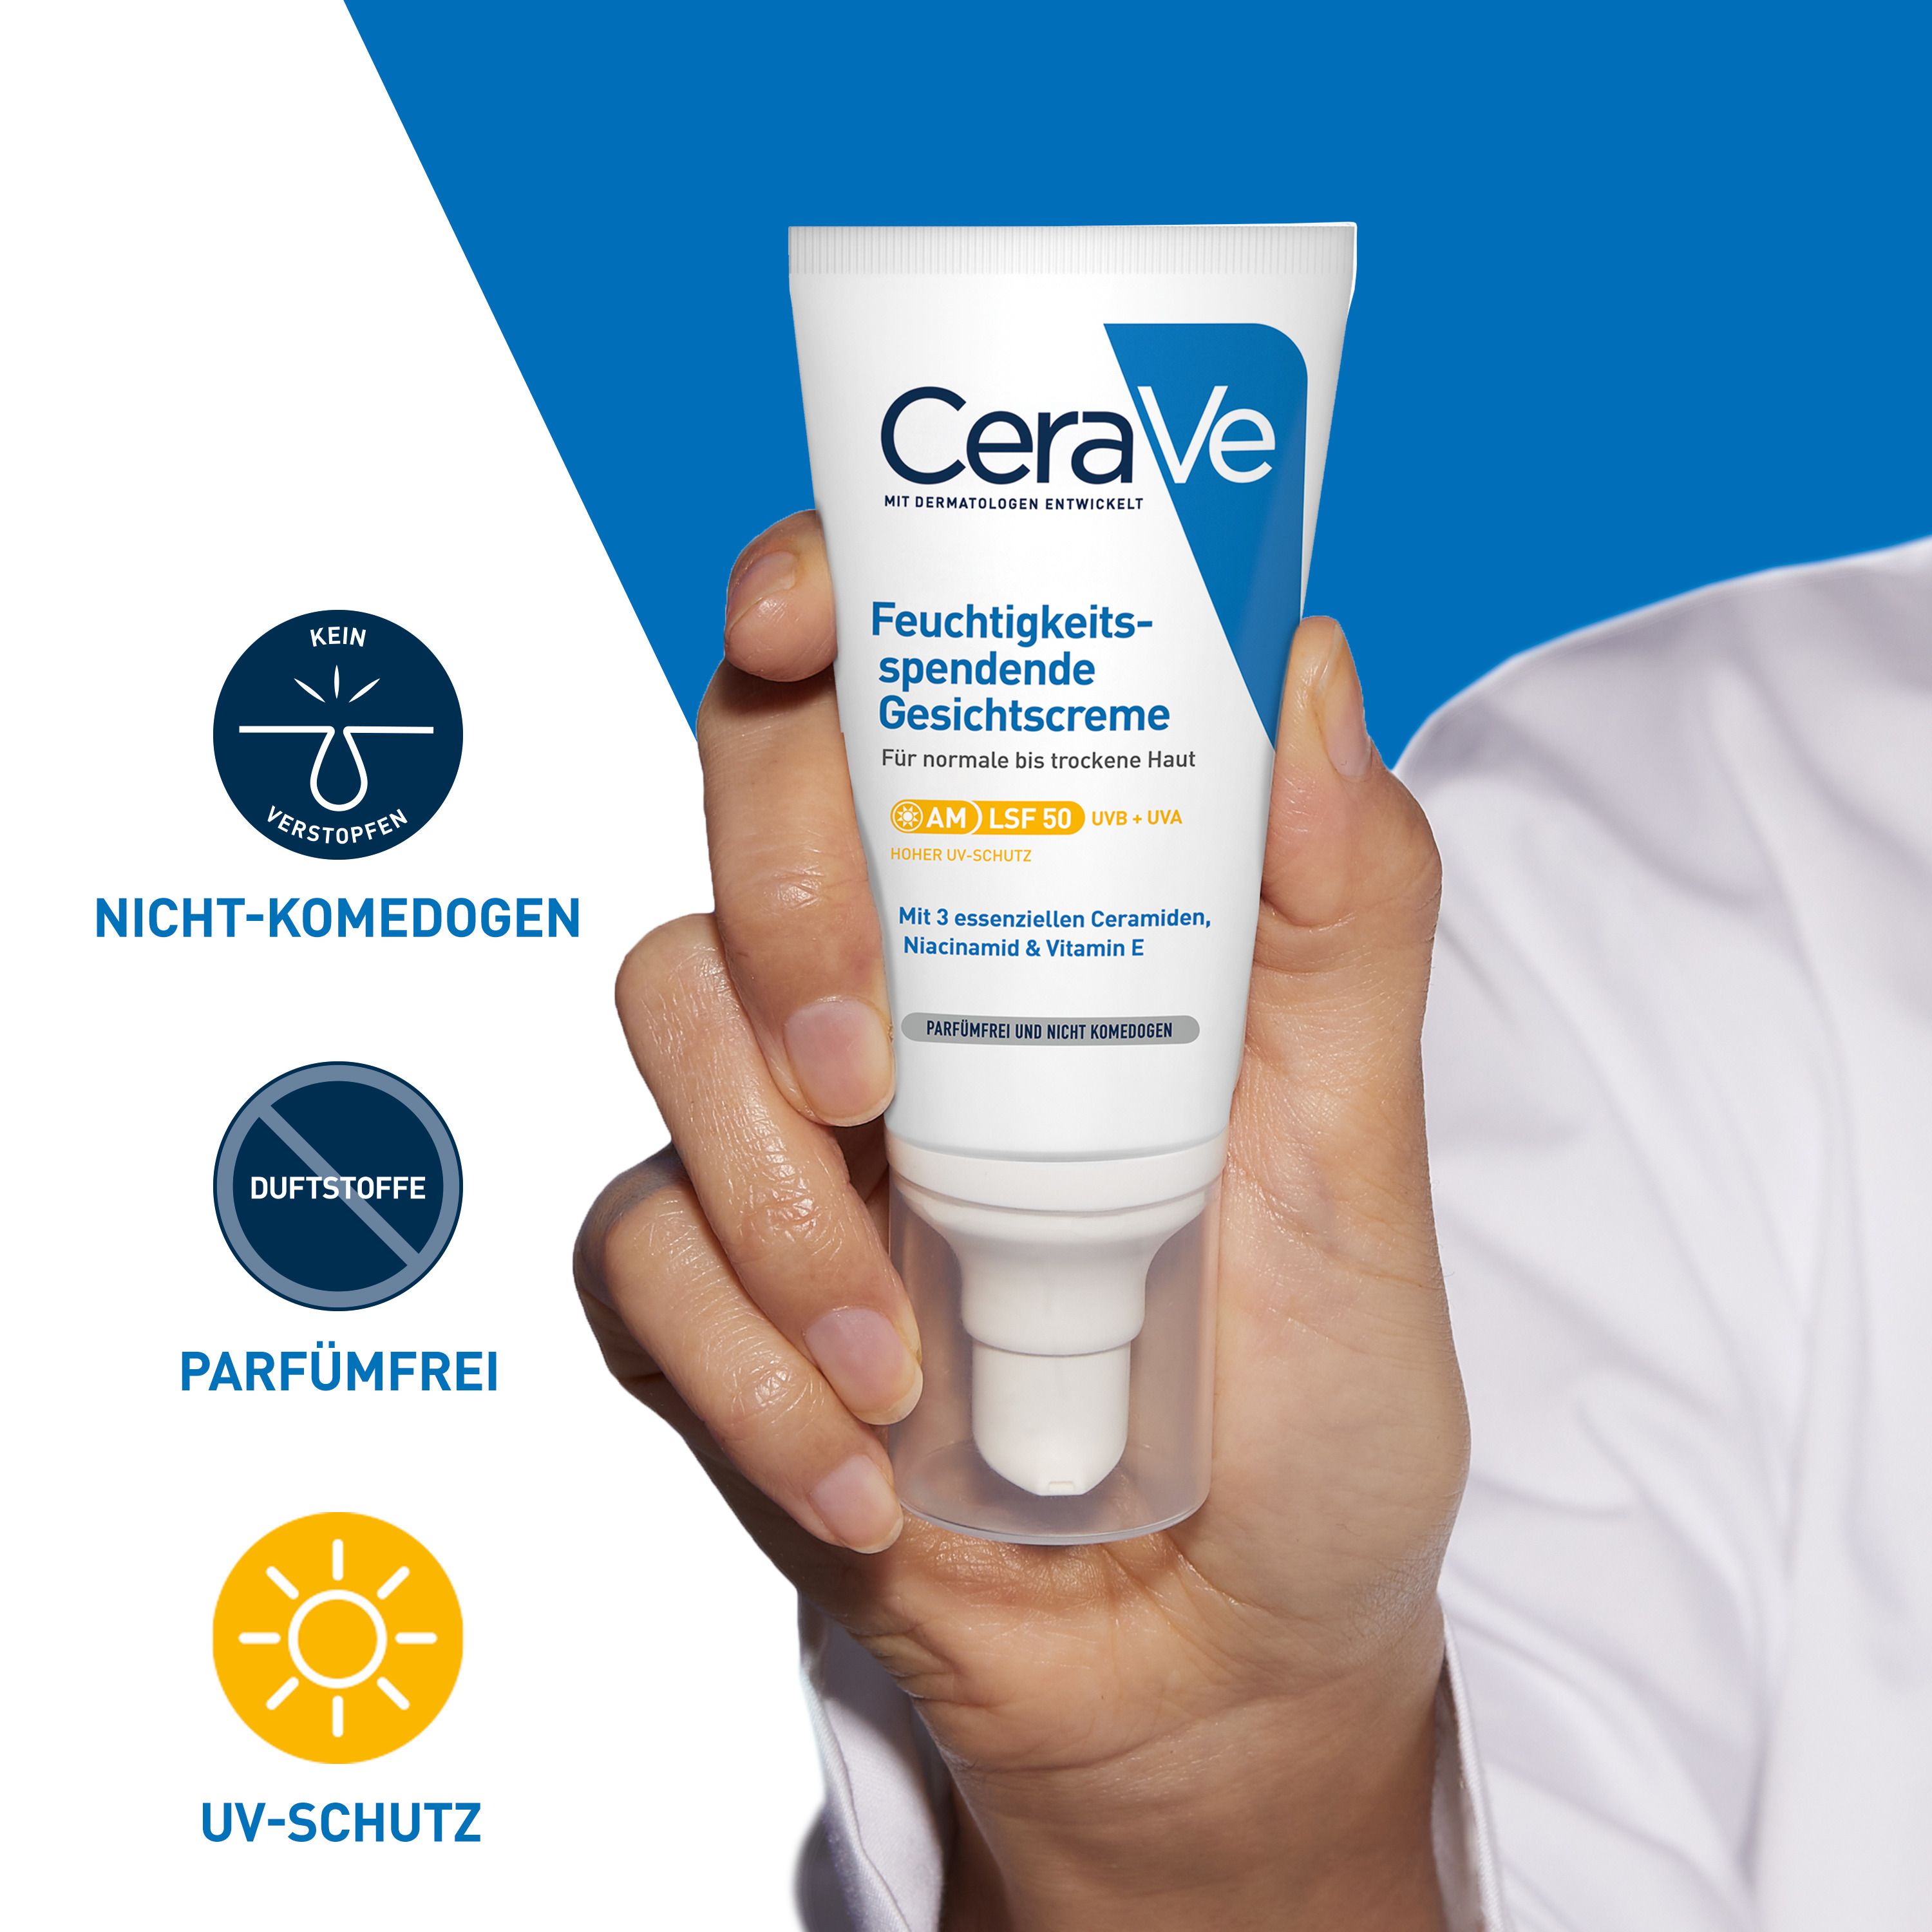 CeraVe Feuchtigkeitsspendende Gesichtscreme mit LSF 50 – für normale bis trockene Haut + GRATIS Beigabe CeraVe Schäumendes Reinigungsgel Mini